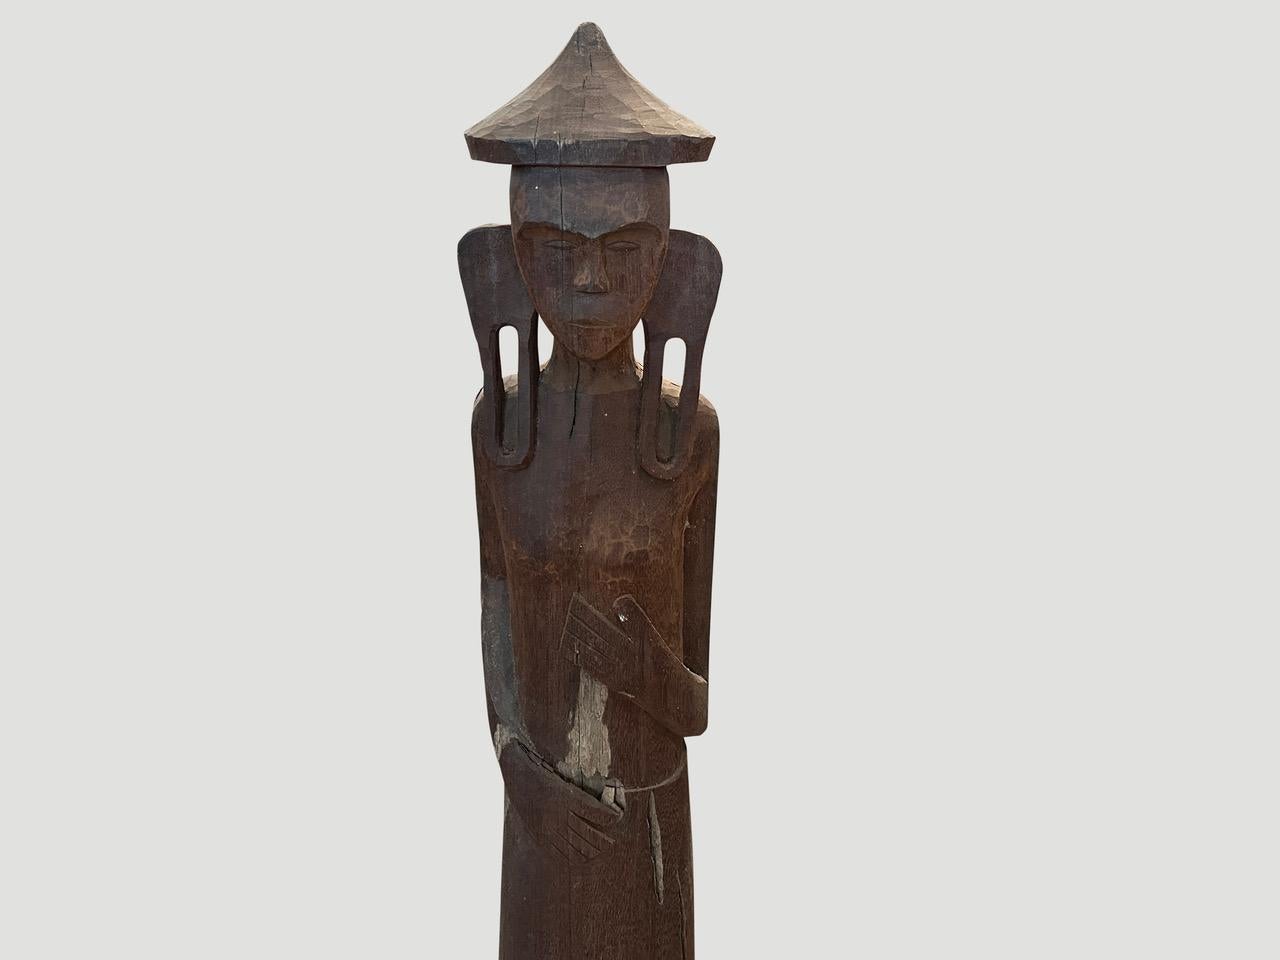 Antike männliche Statue, handgeschnitzt aus einem einzigen Holzstamm aus West-Borneo. Ursprünglich wurde er zum Schutz des Hauses vor bösen Geistern verwendet. Der hölzerne Sockel wurde als Wächter vor dem Haus in den Boden eingelassen. Wir haben